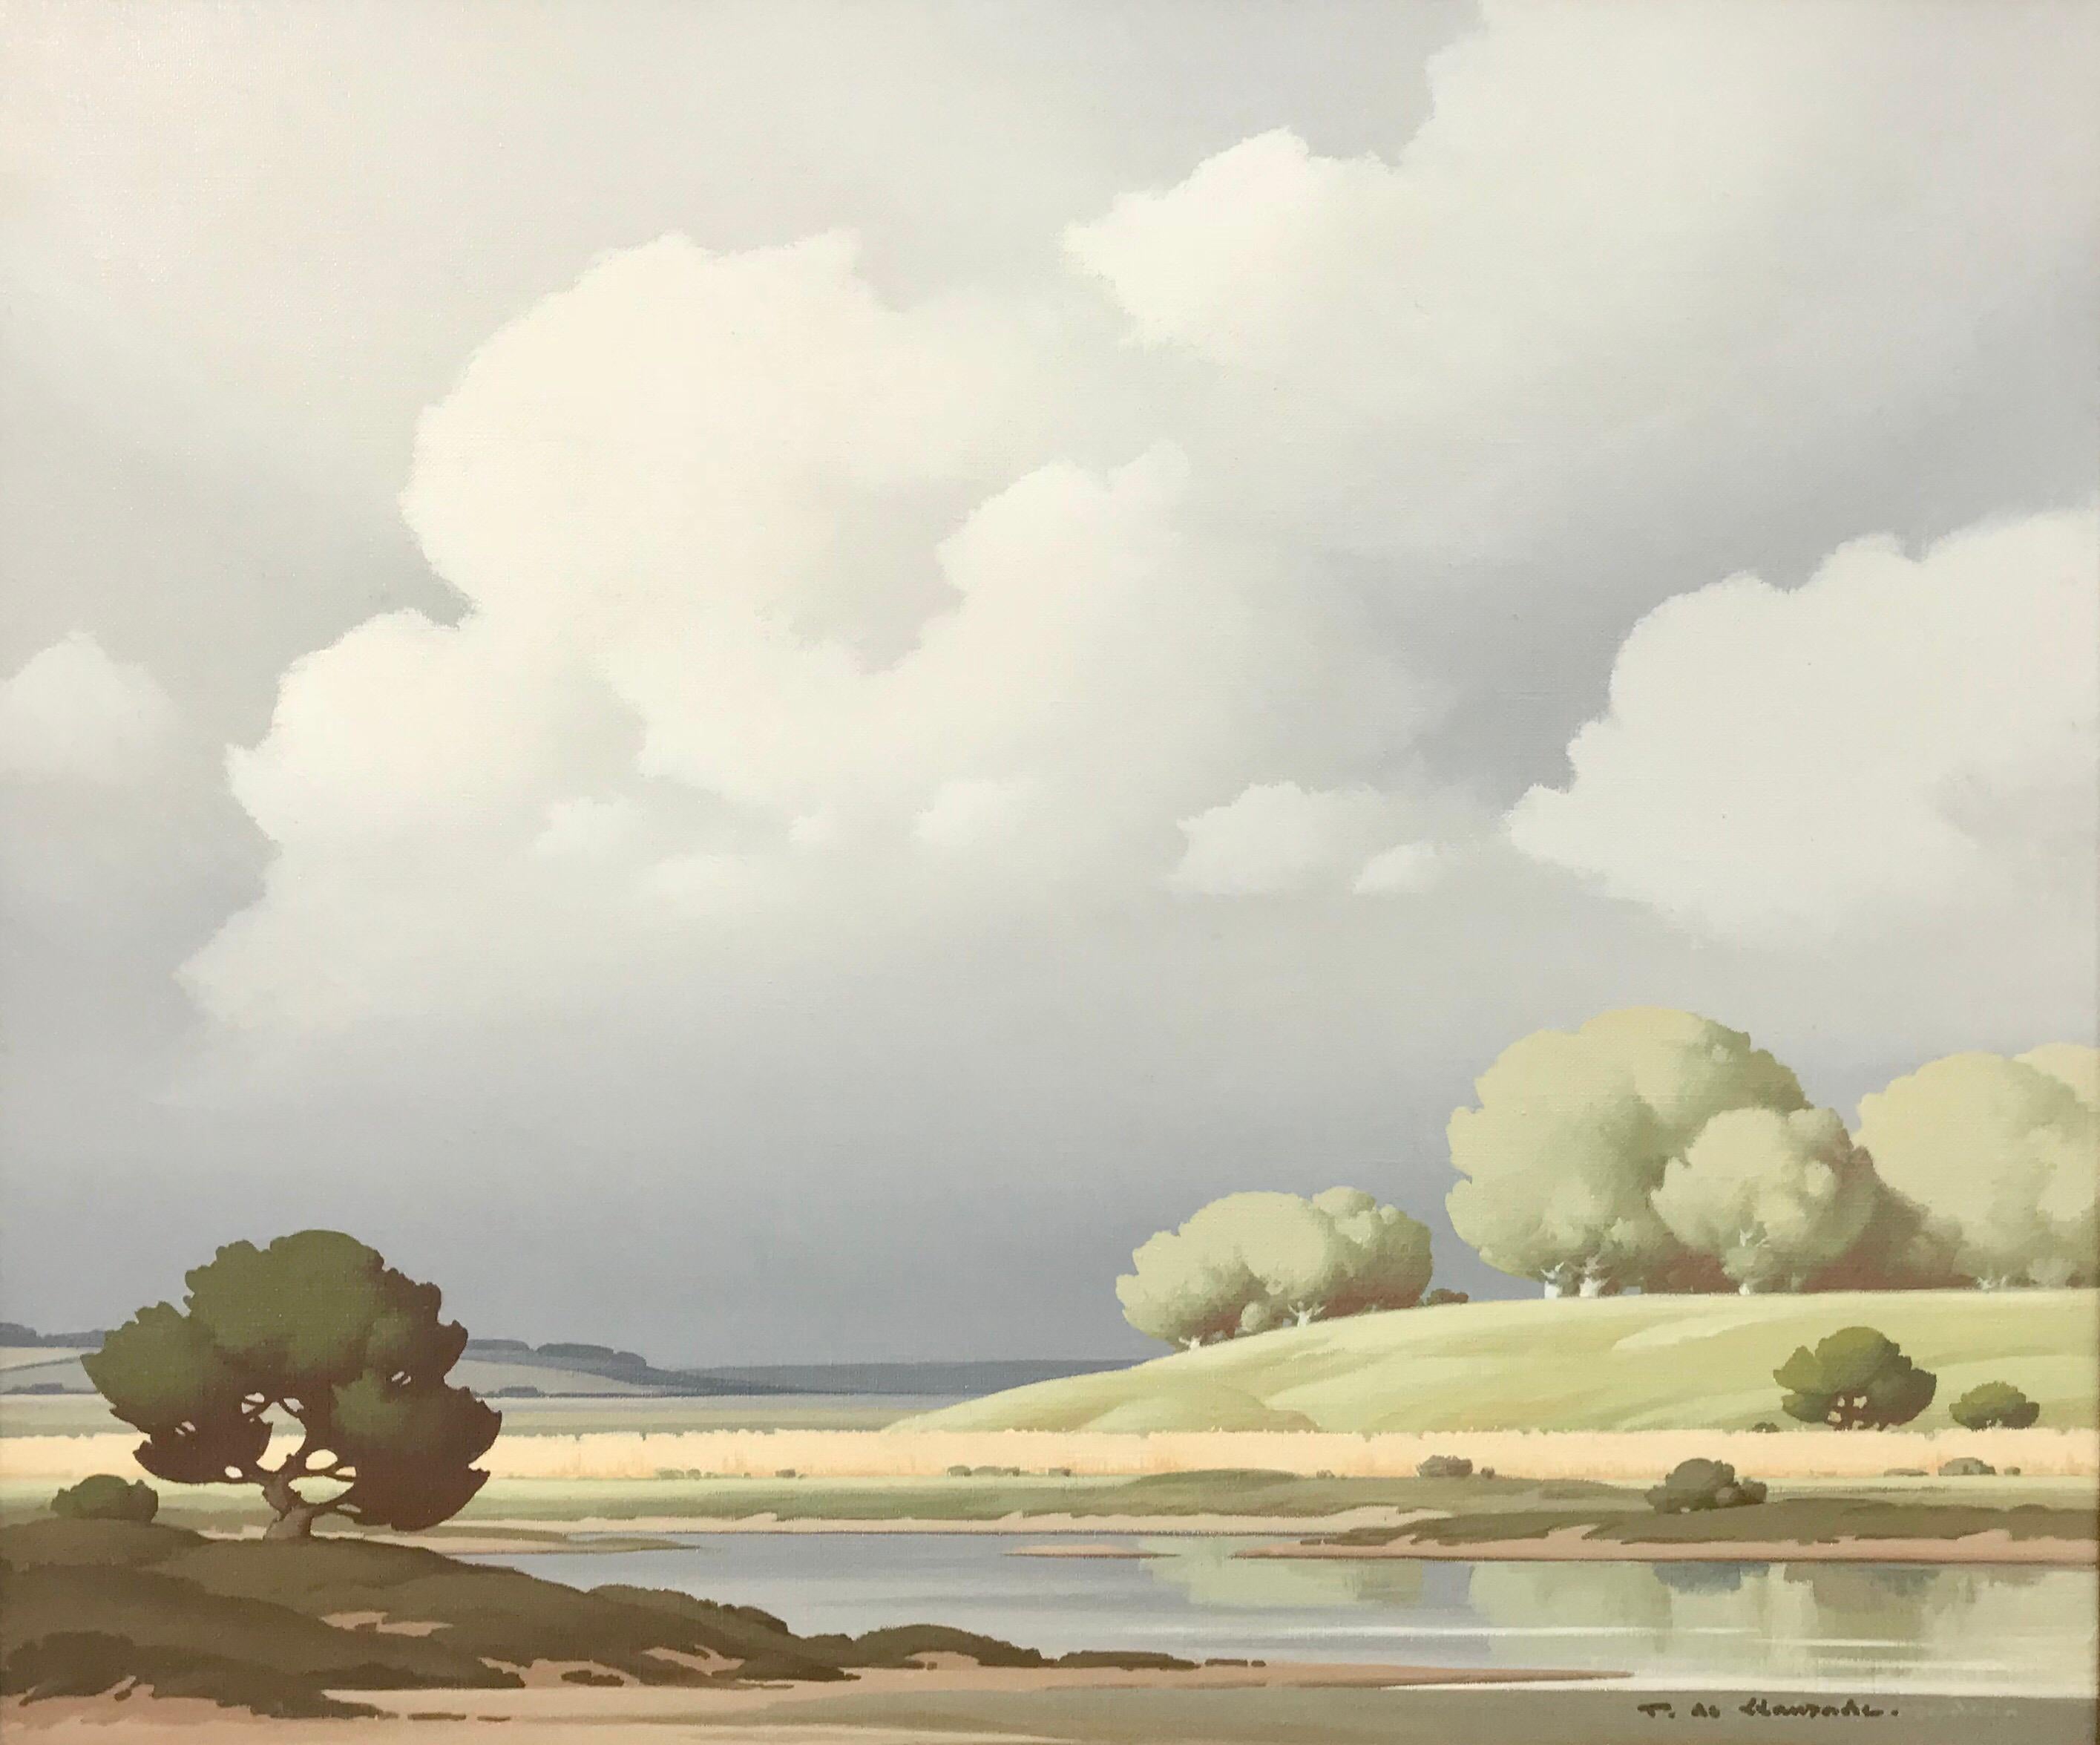 Pierre de Clausade Figurative Painting - Vue sur la Loire France 20th Century Painting by French River Landscape Artist